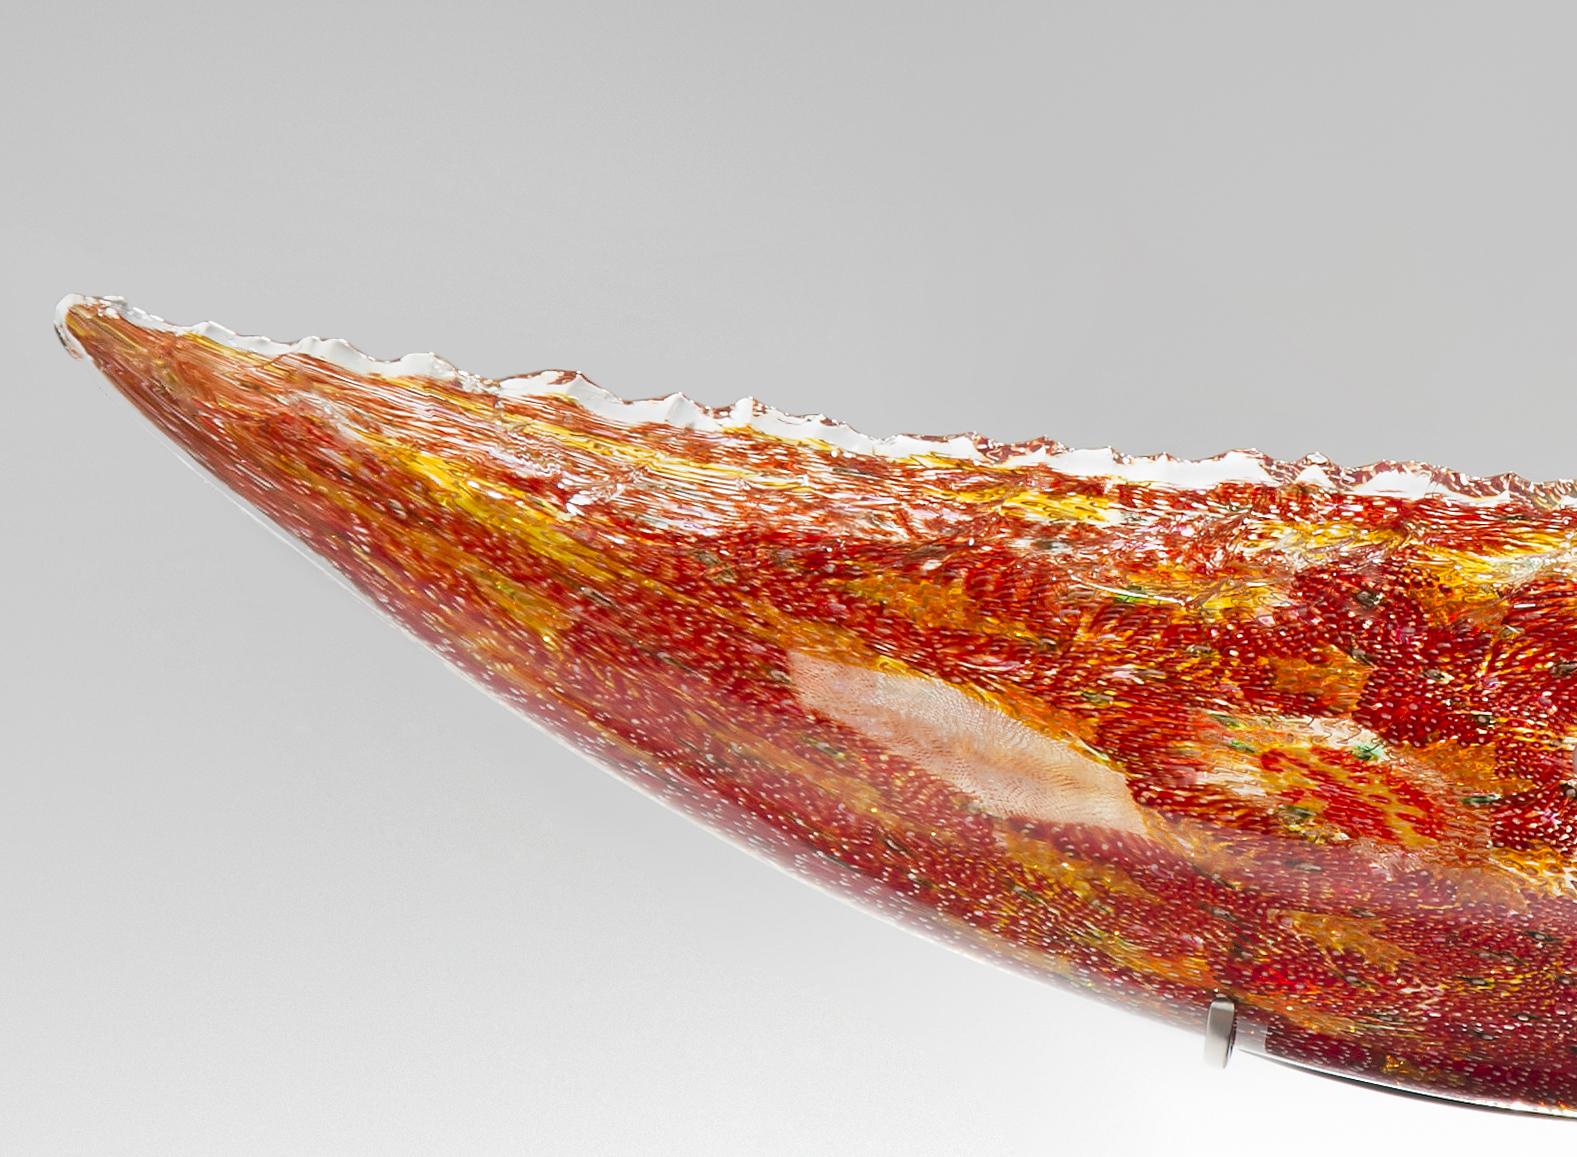 Organic Modern Coral Quillon, a Unique Glass Sculpture by James Devereux & David Patchen